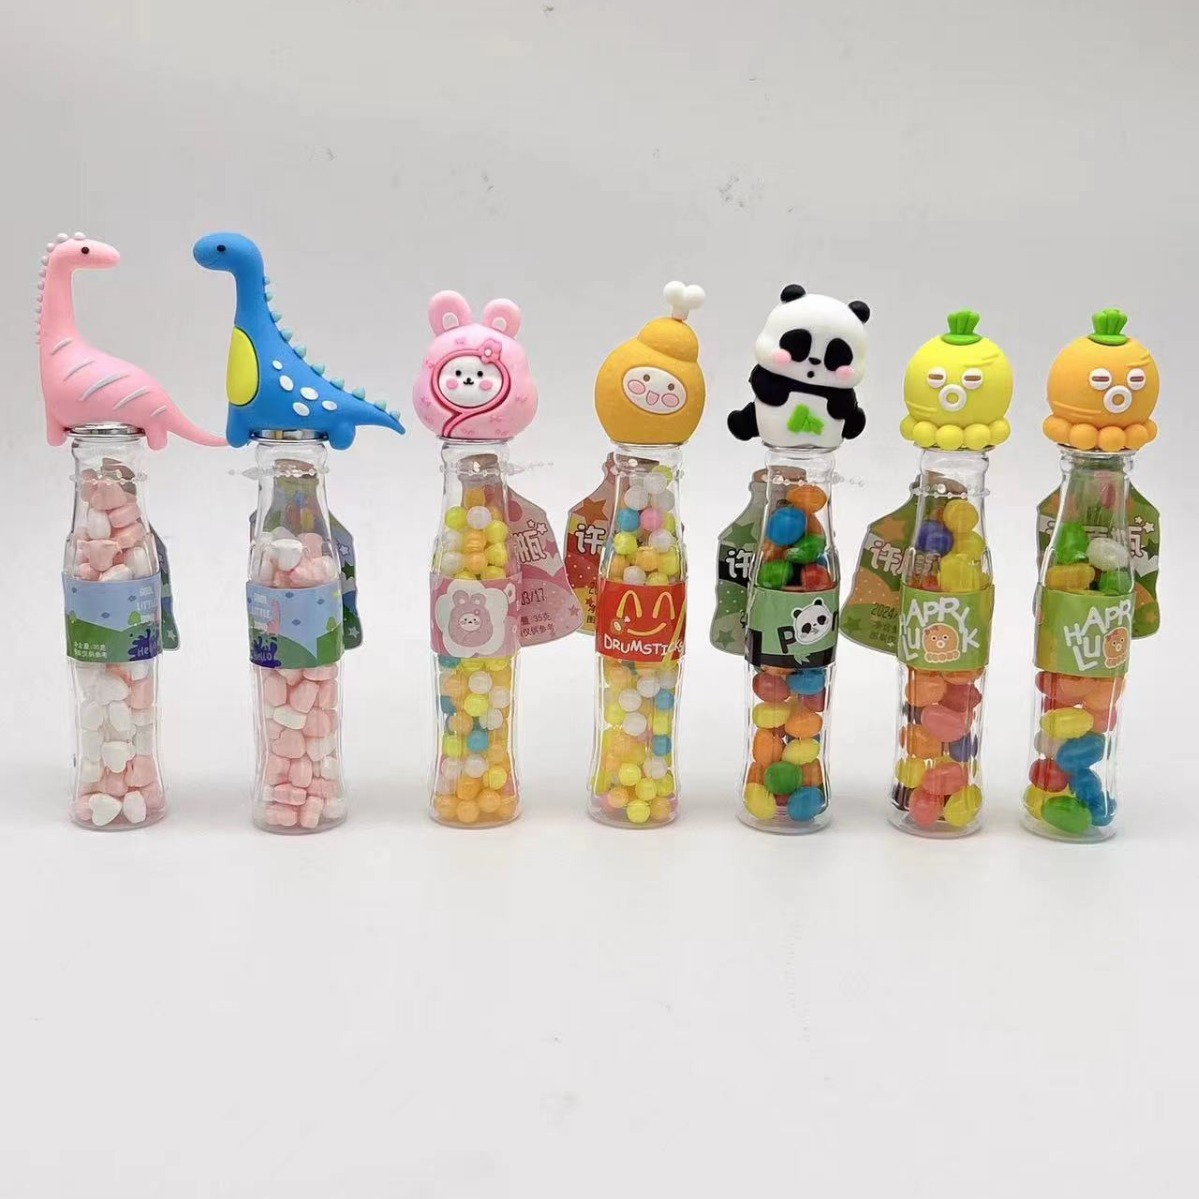 创意珍珠糖网红宝贝兔许愿瓶七彩糖果批发儿童小零食瓶装卡通糖果图